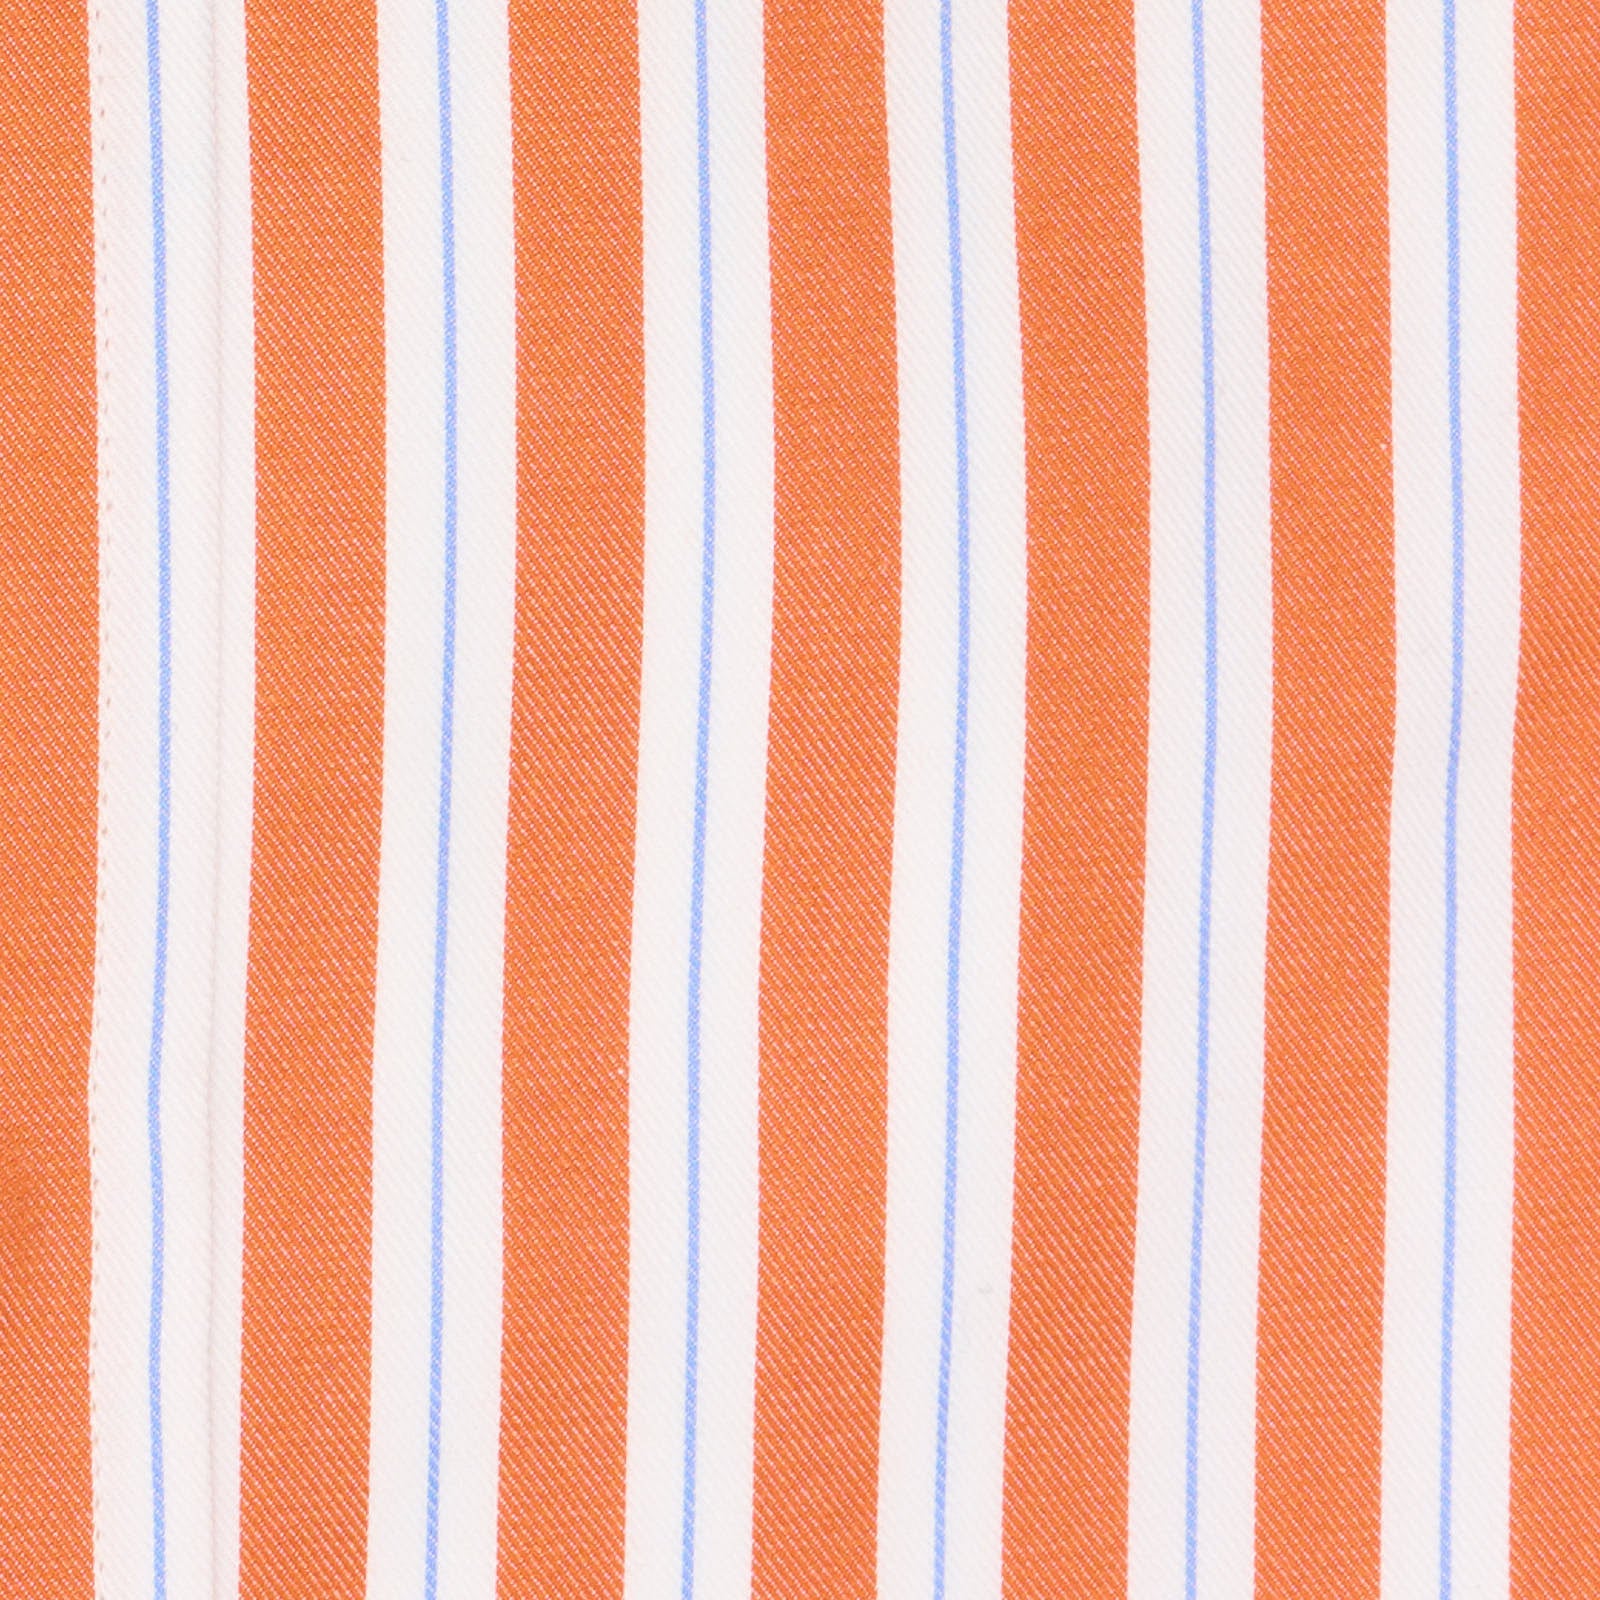 VANNUCCI Milano Multicolor Striped Twill Cotton Dress Shirt EU 38 NEW US 15